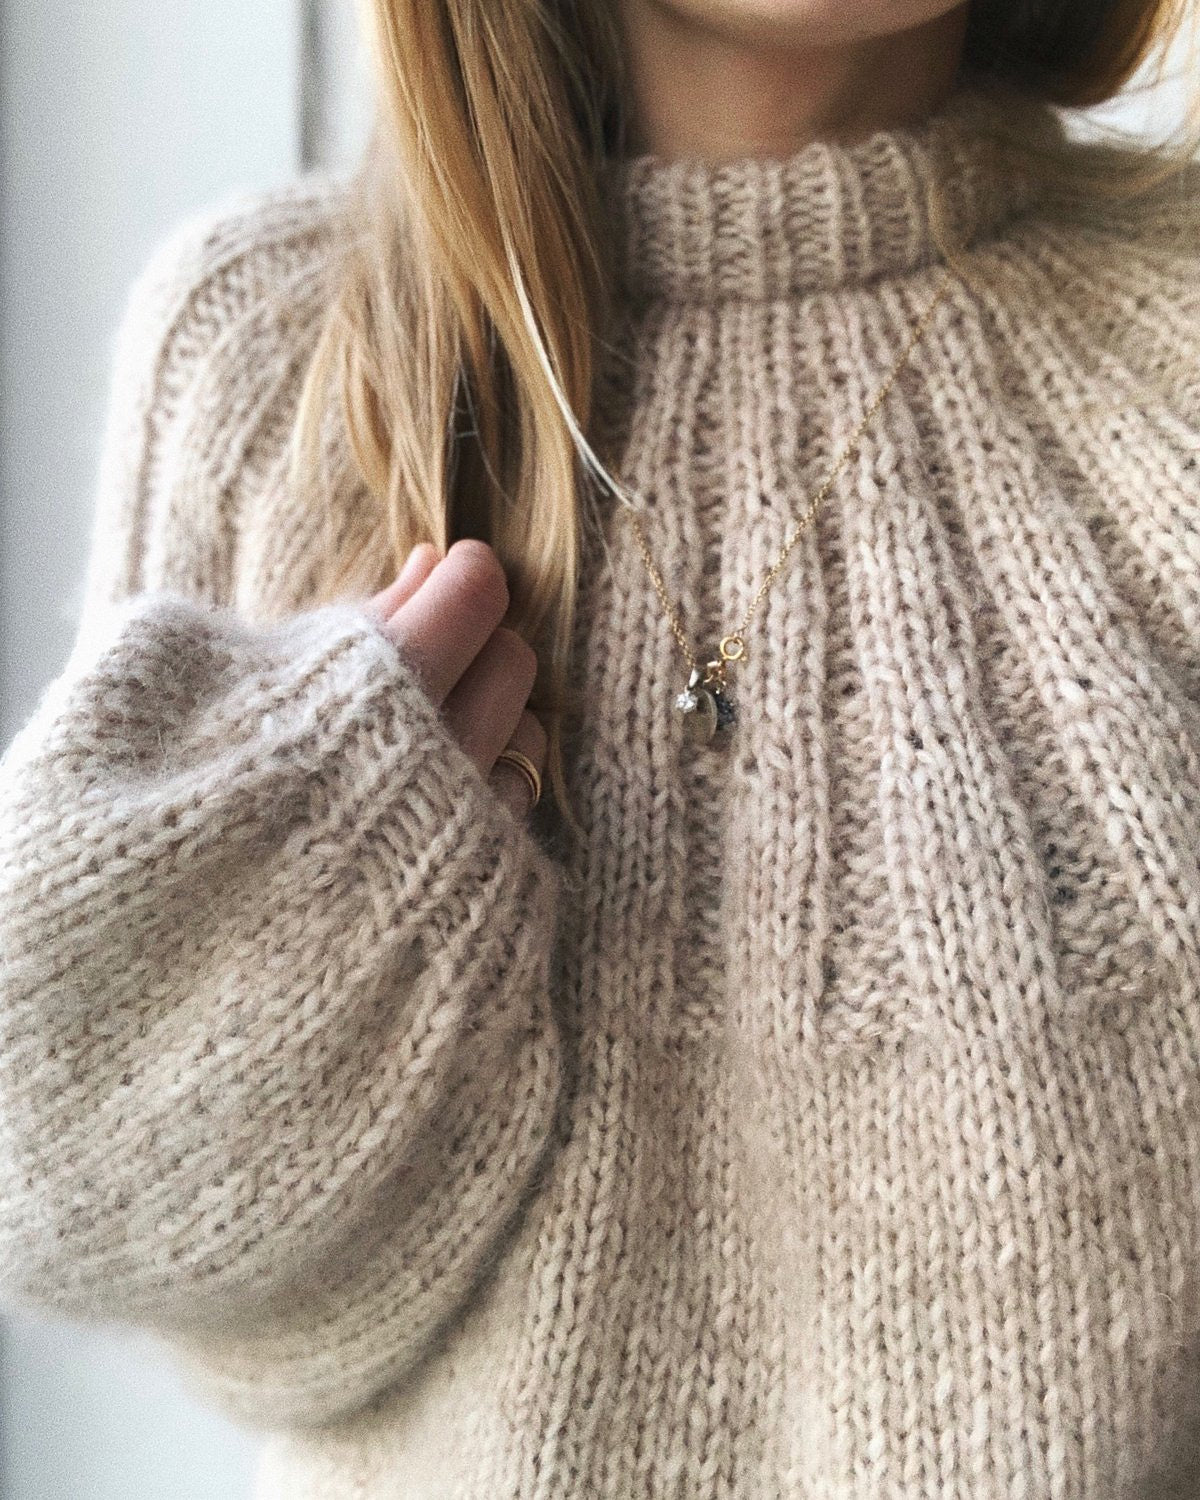 Sunday Sweater (Bulky Weight) Knit Pattern